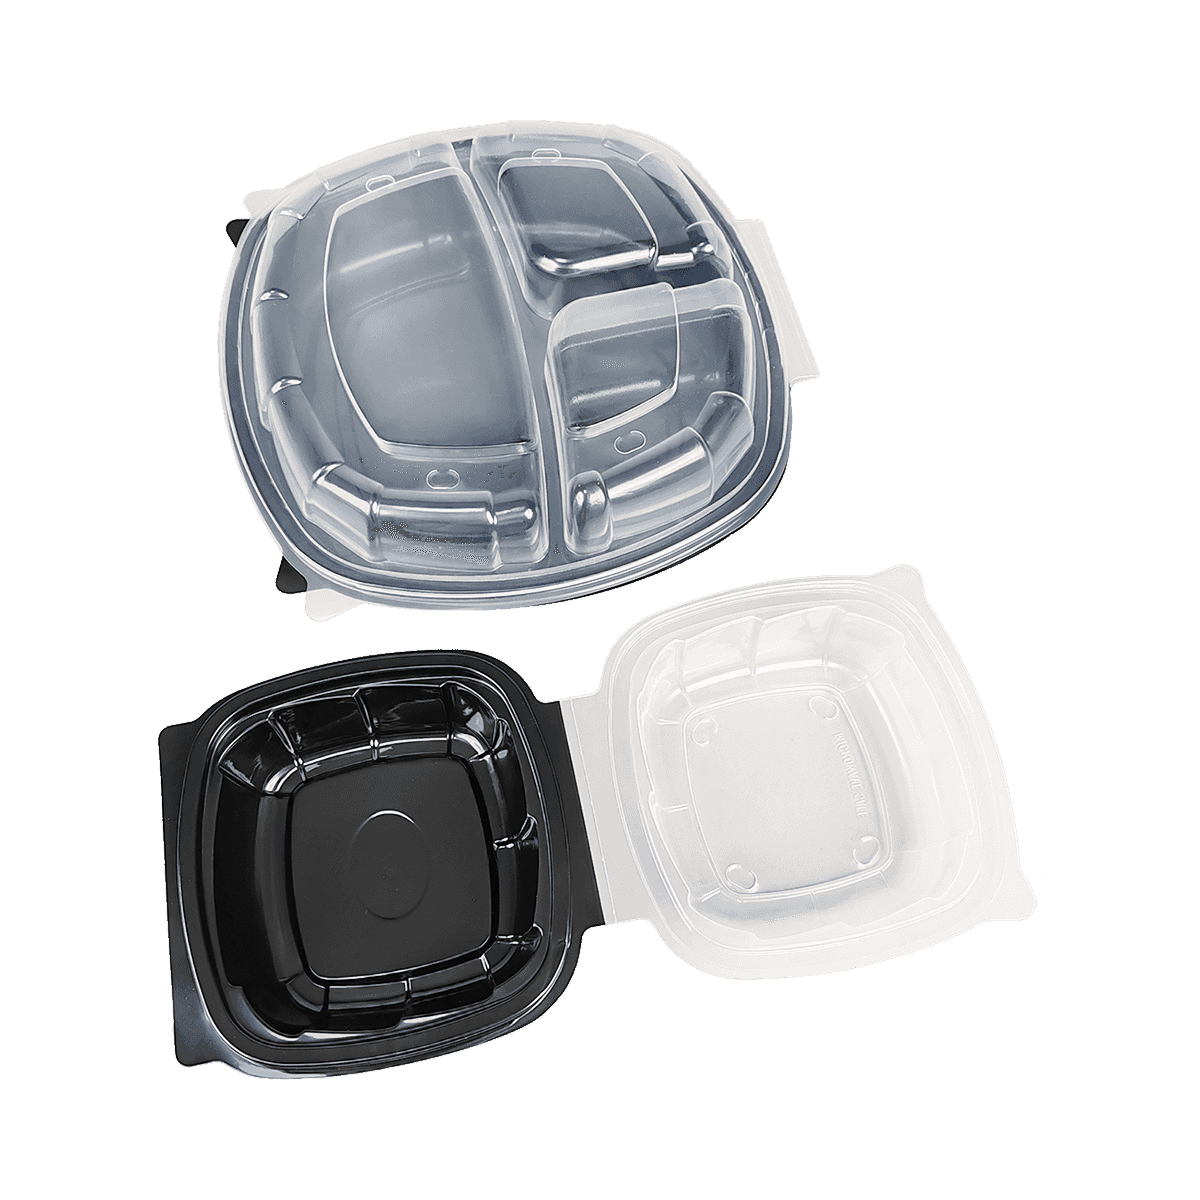 ZK-PP-036 Contenedores de embalaje de PP aptos para congelador y microondas, reutilizables para almacenamiento en la cocina, preparación de comidas, comida para llevar, suministros para restaurantes